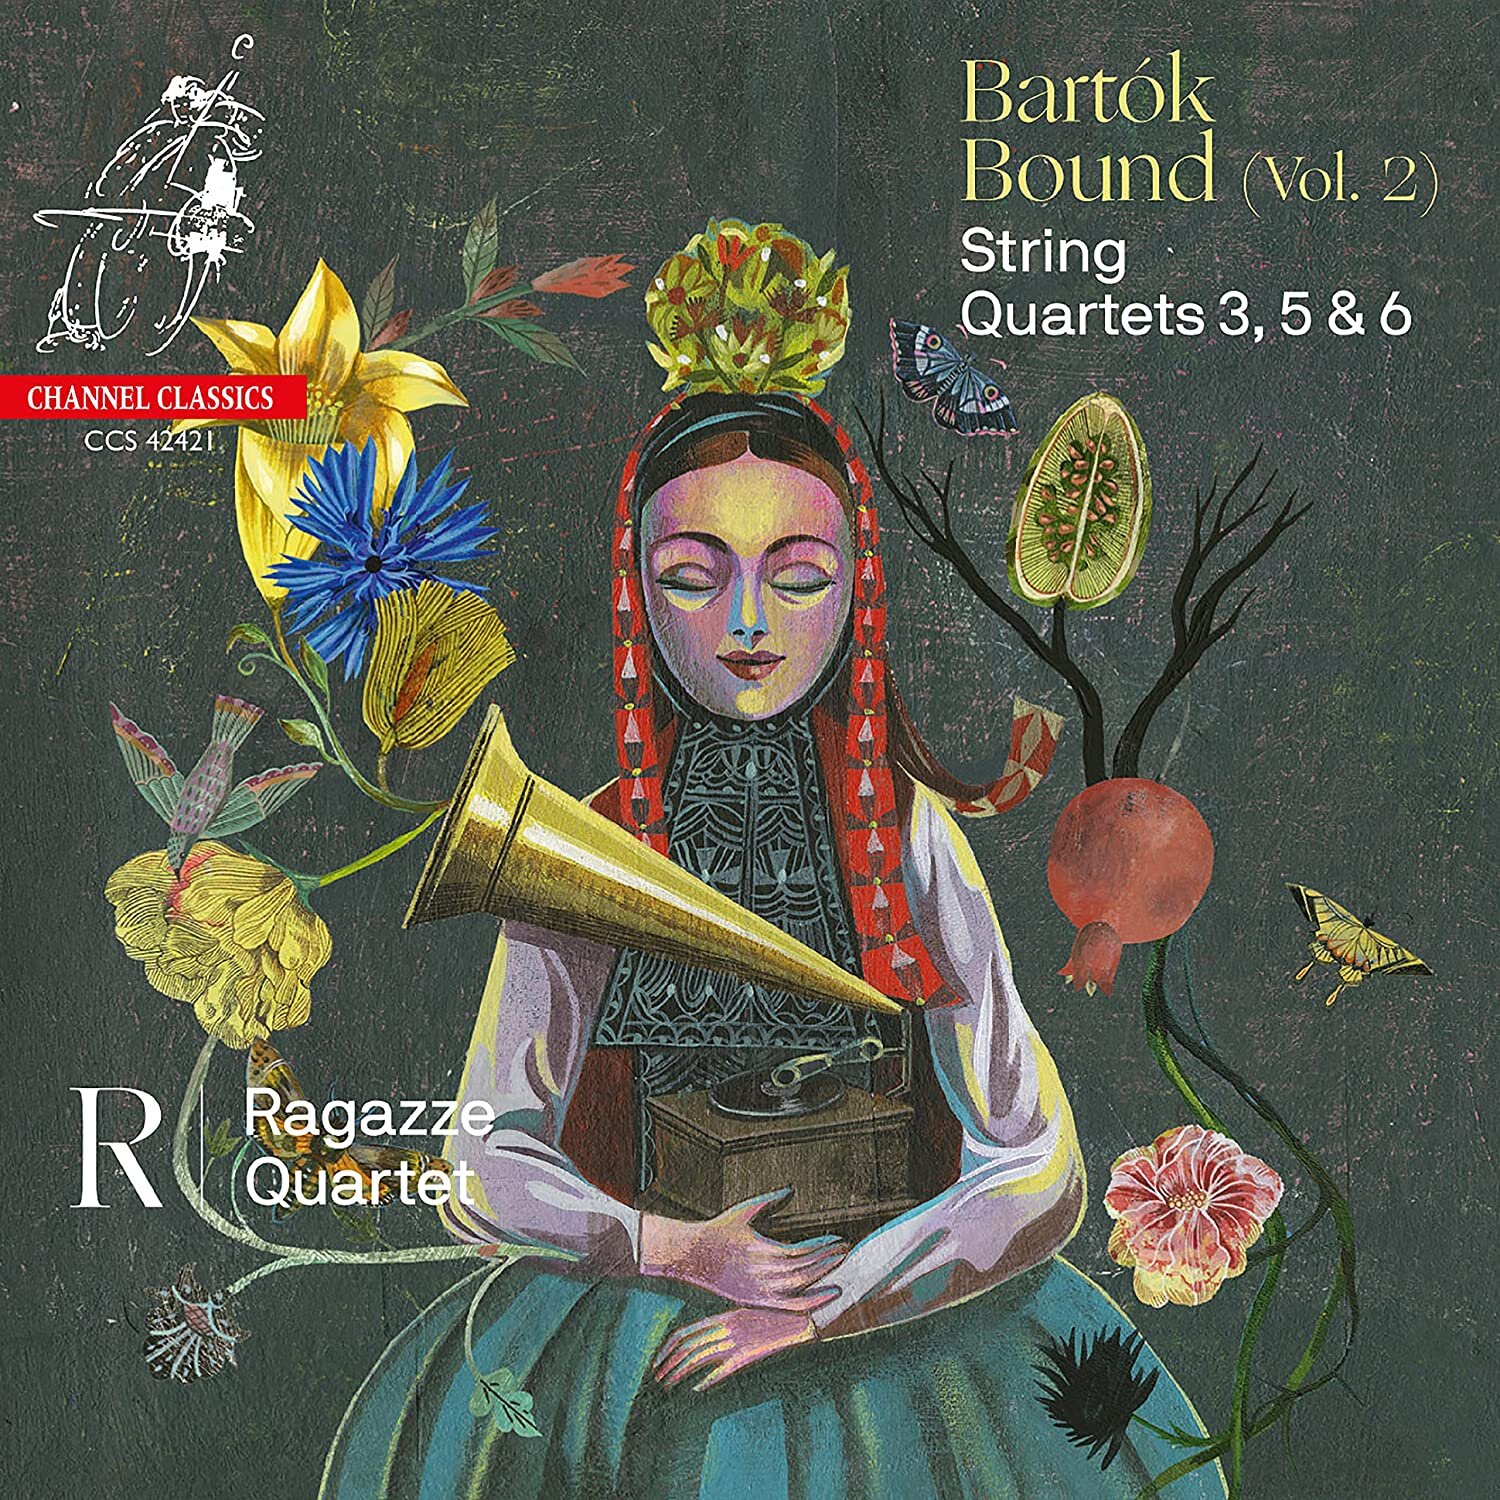 Bartok Bound I - Ragazze Quartet